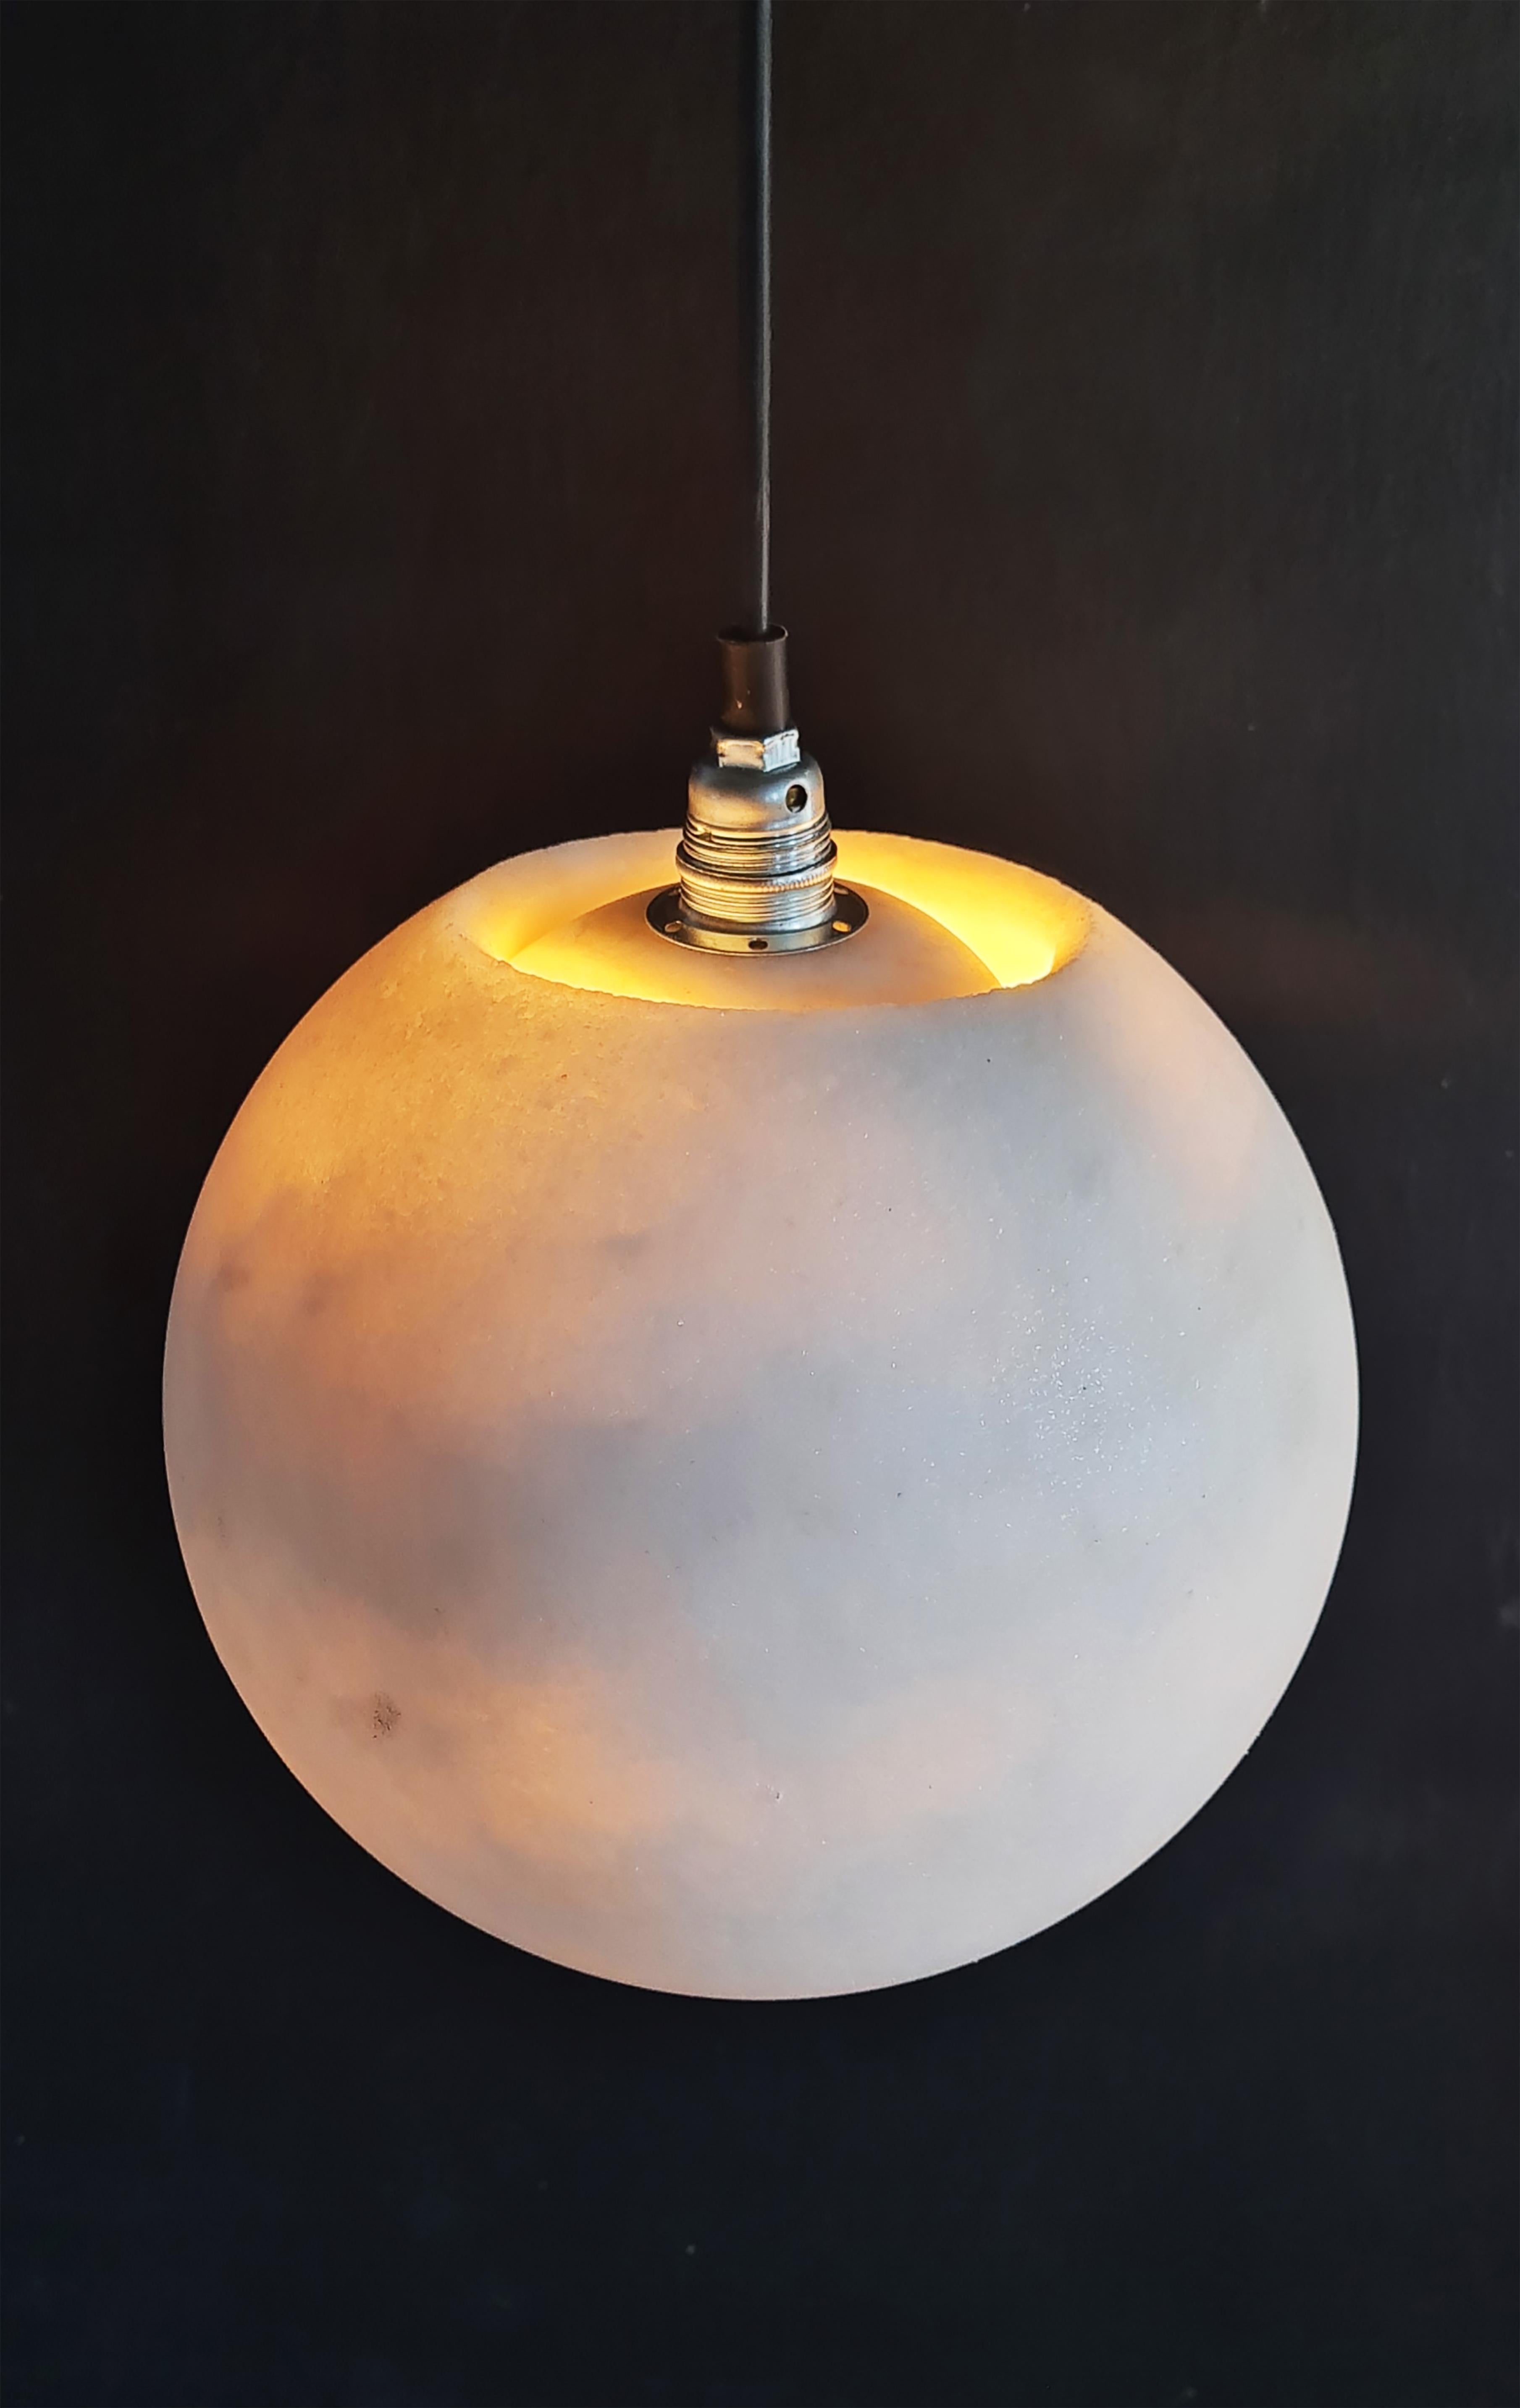 Planet Lamp von Roxane Lahidji
Abmessungen: D 25 x H 25 cm
MATERIAL: Marmorierte Salze
Eine einzigartige, preisgekrönte Technik, entwickelt von Roxane Lahidji

Preisträger der Bolia Design Awards 2019 und FD100 und in den Sammlungen des Design